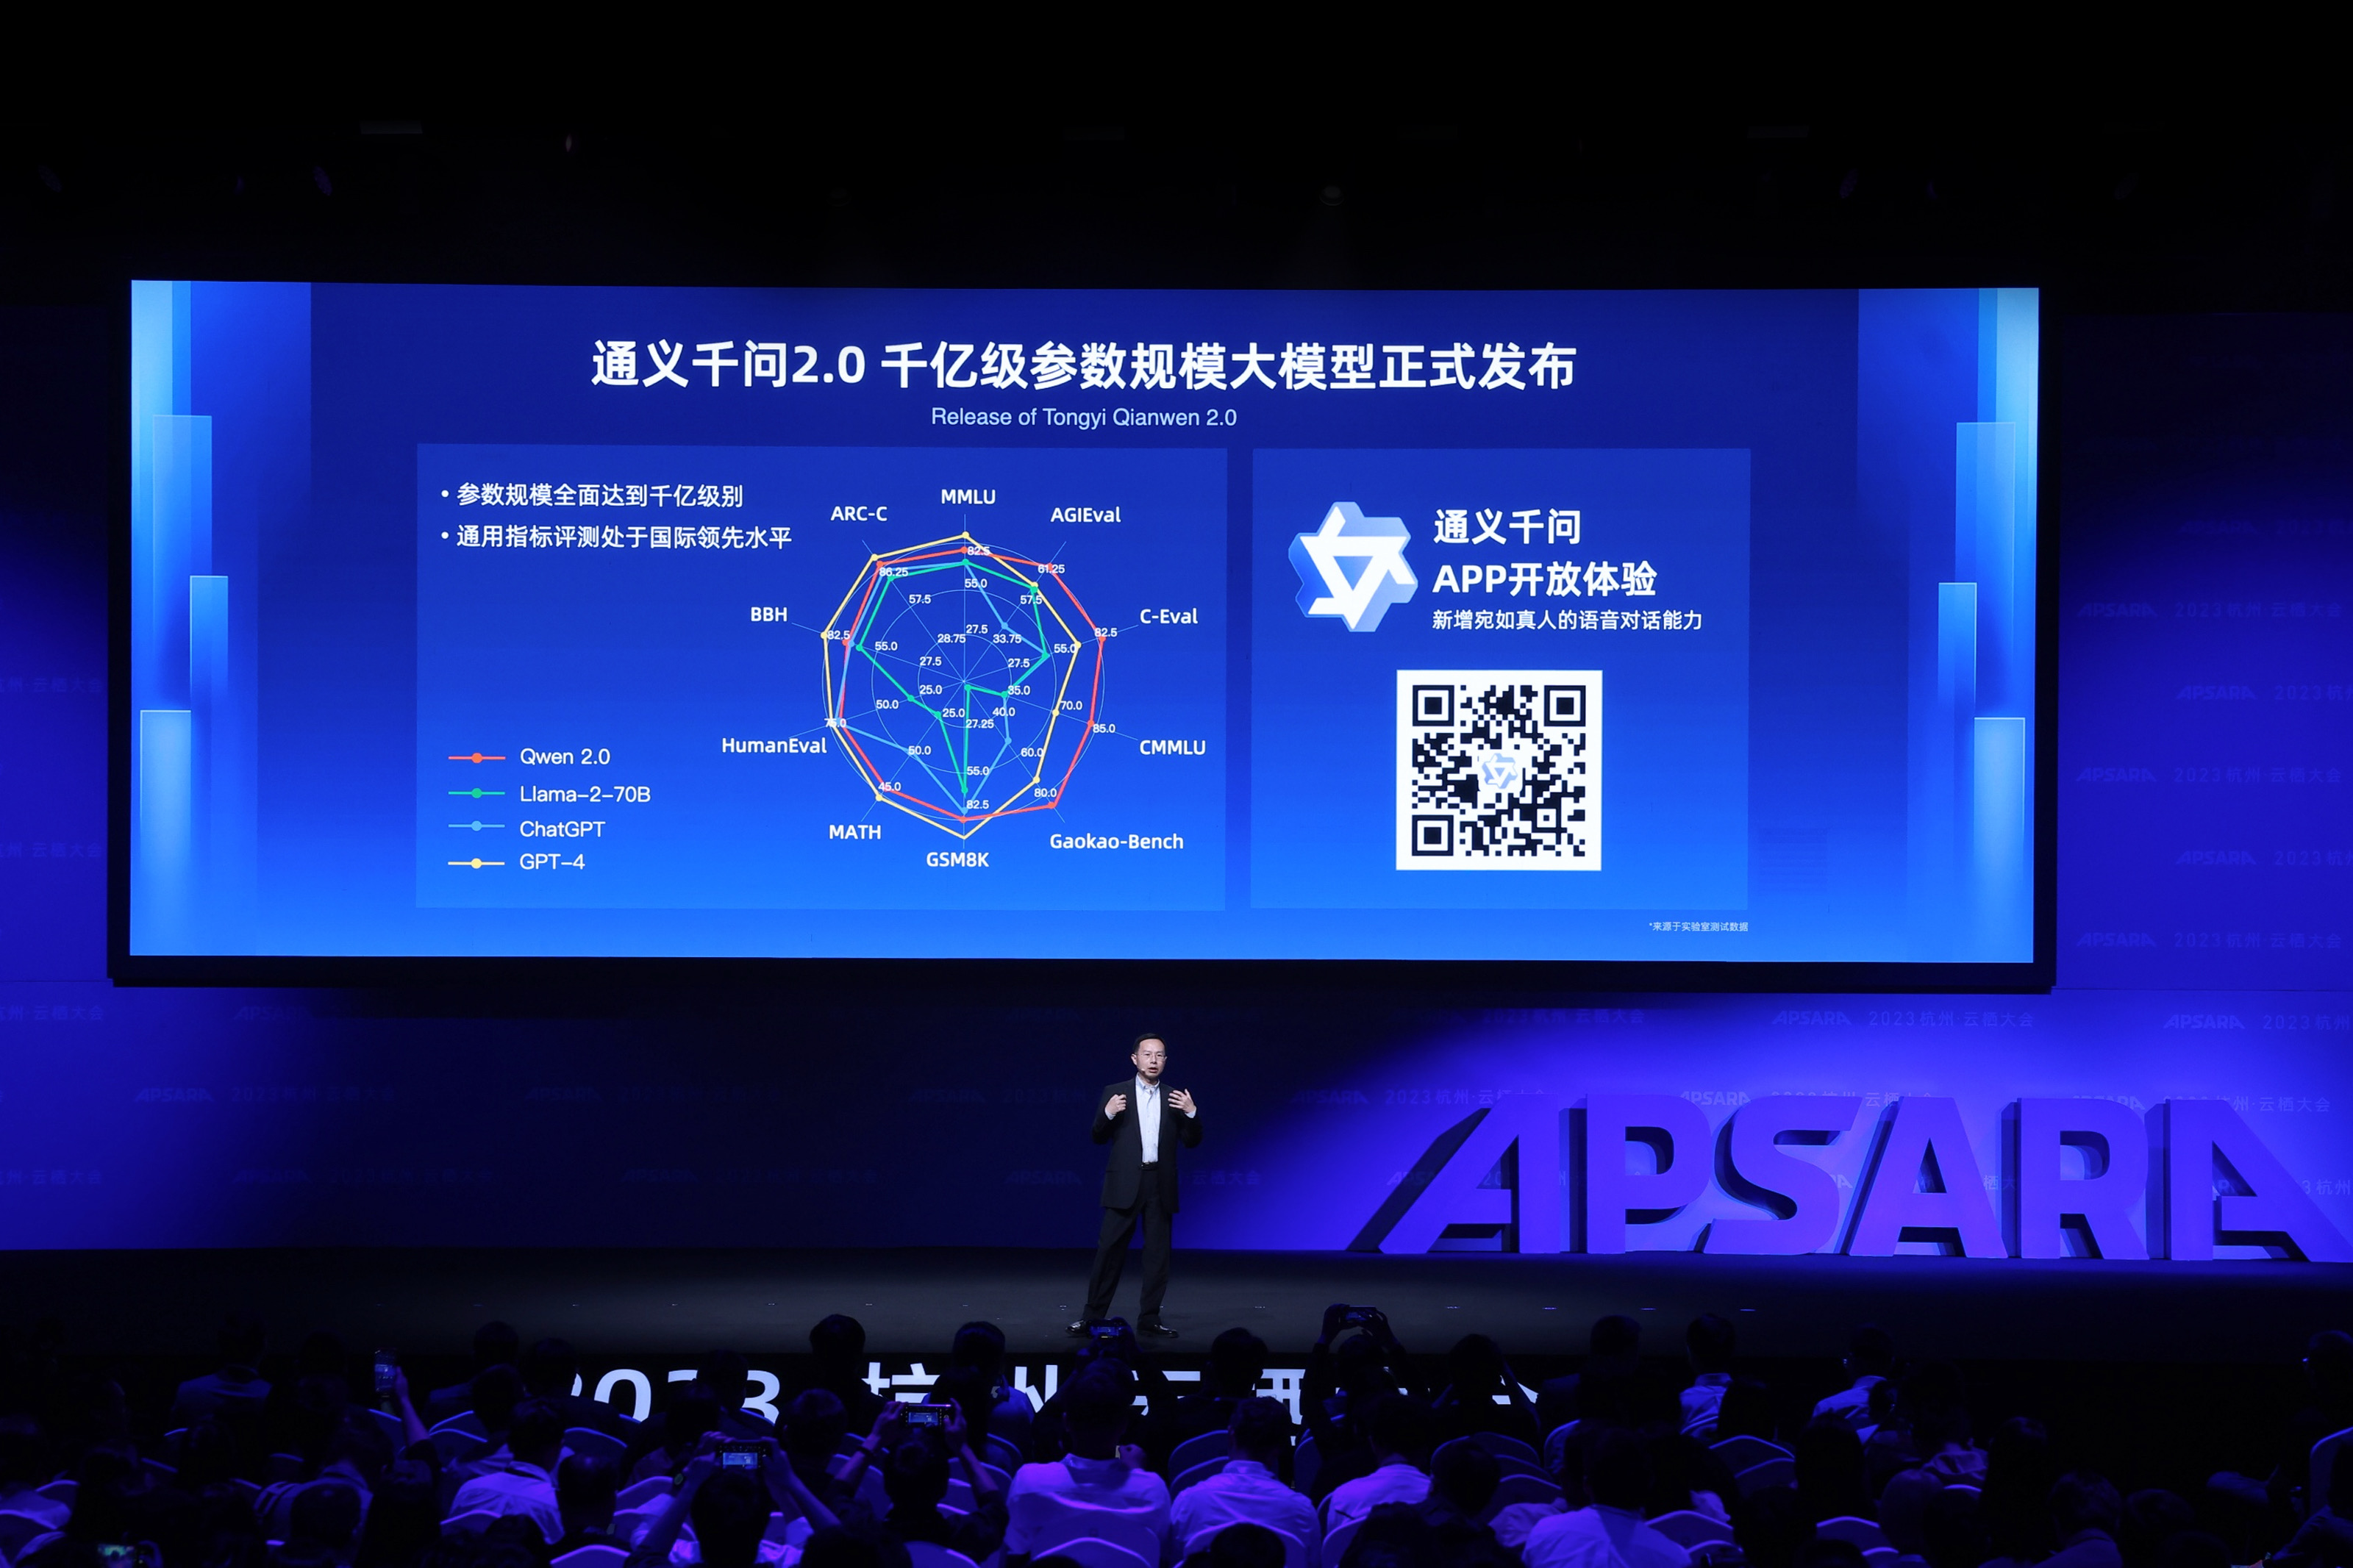 อาลีบาบา คลาวด์ เปิดตัว Tongyi Qianwen 2.0 และโมเดลเฉพาะทางสำหรับธุรกิจต่าง ๆ เพื่อลูกค้าให้เก็บเกี่ยวคุณประโยชน์จาก Generative AI